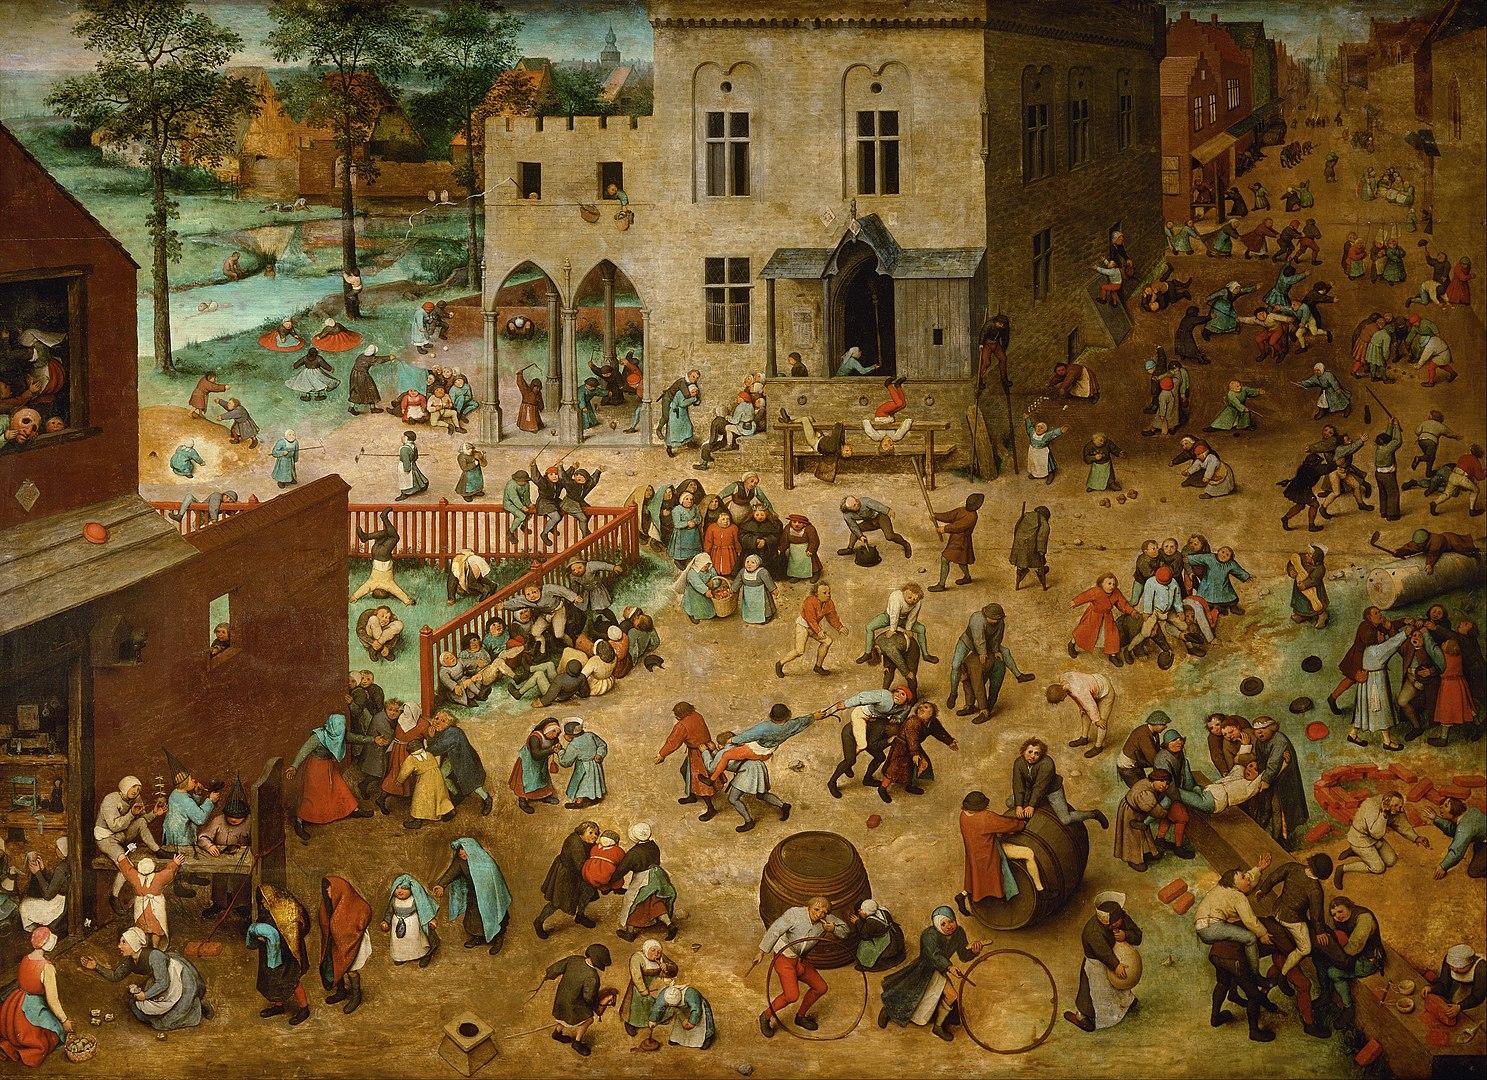 Pieter Bruegel the Elder, Children's Games (Bruegel), 1560